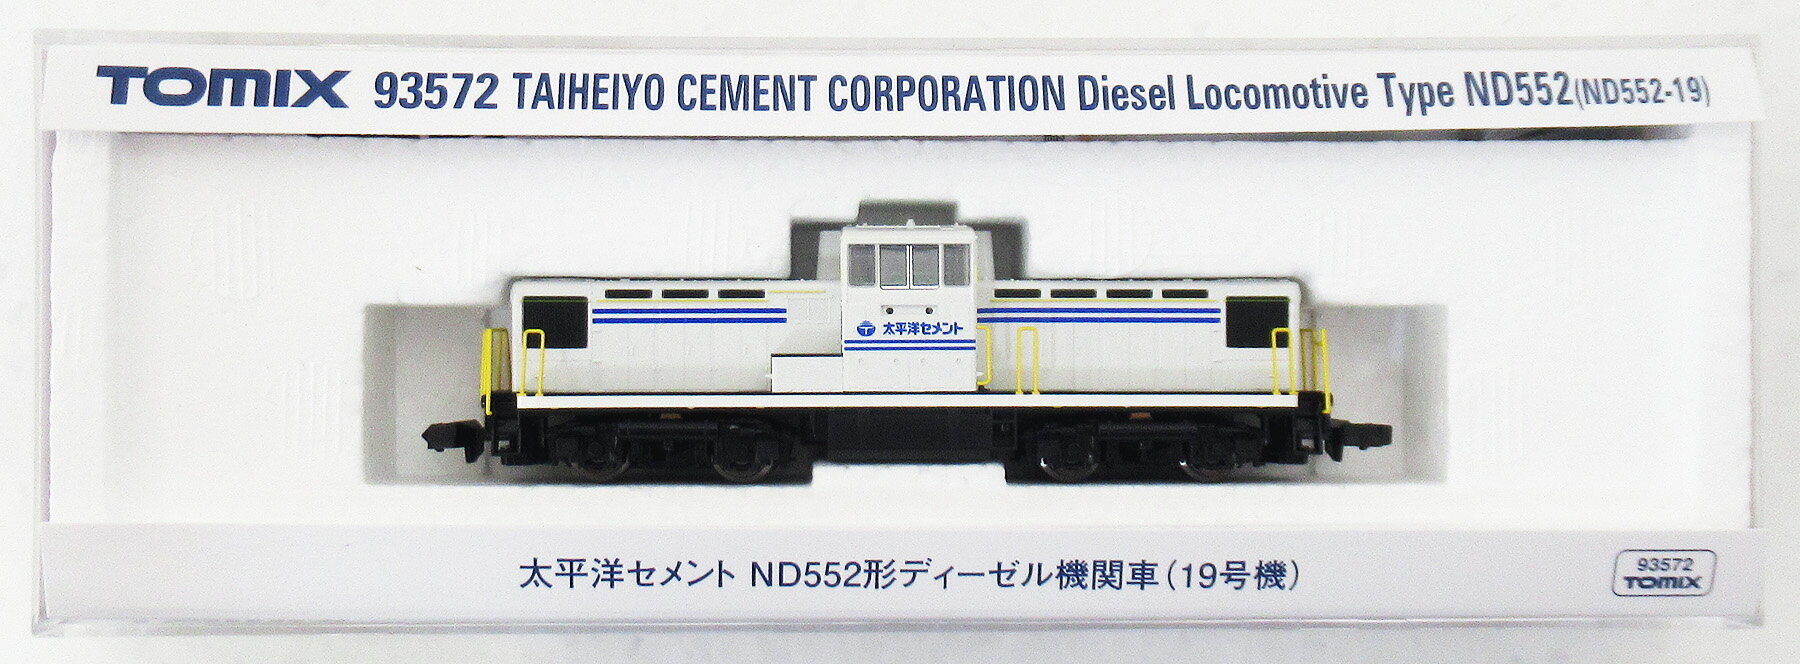 【中古】Nゲージ TOMIX(トミックス) 93572 太平洋セメント ND552形ディーゼル機関車(19号機) 【A】